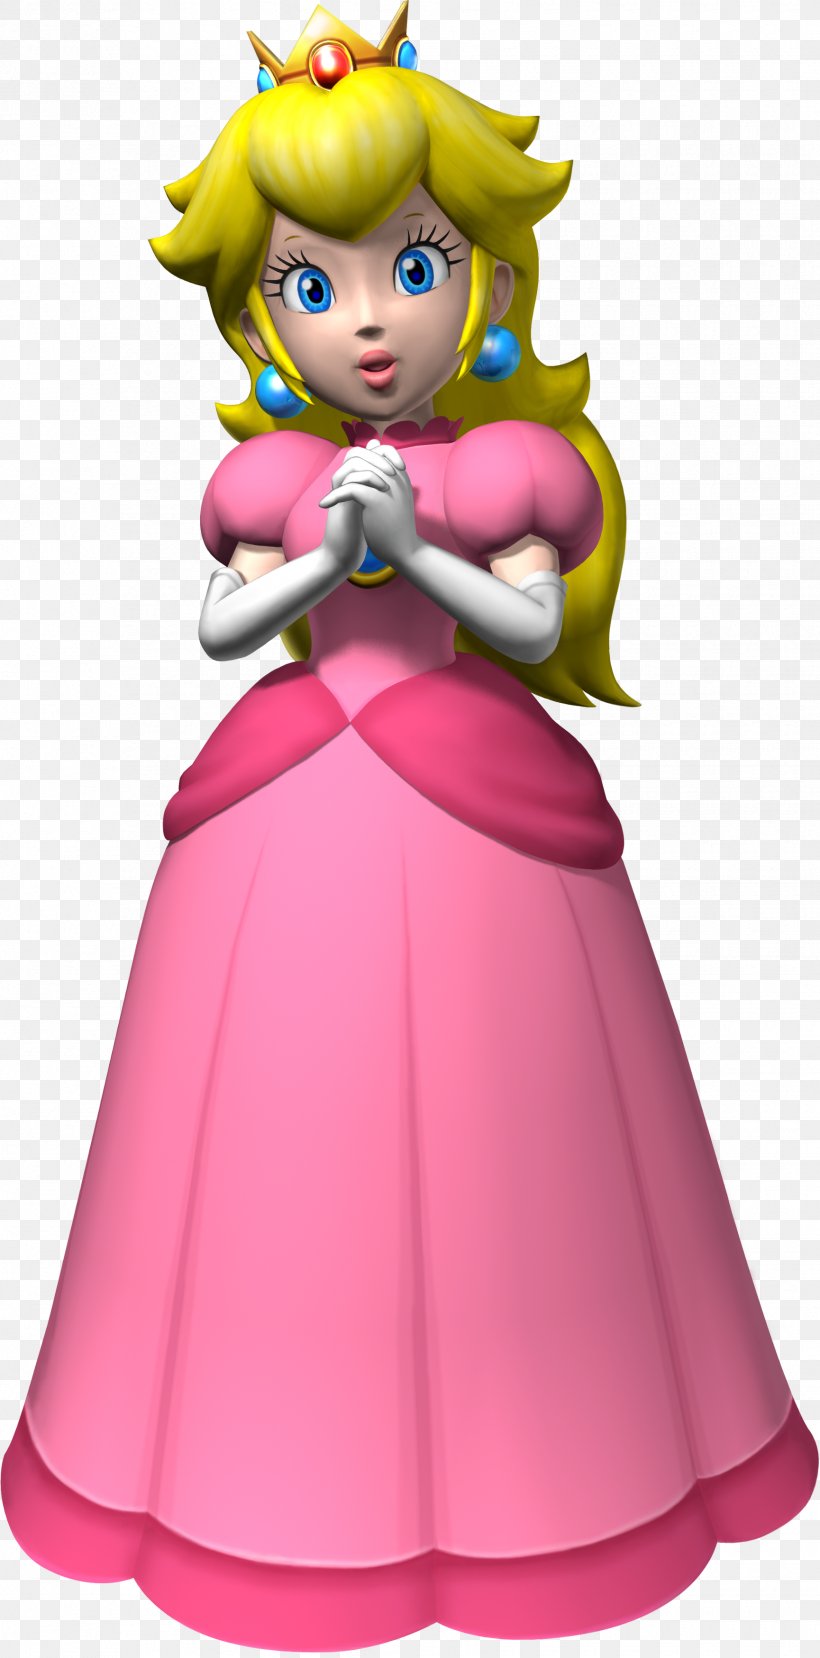 Princess Peach Super Mario Bros. New Super Mario Bros Super Mario Party, PNG, 1730x3500px, Princess Peach, Cartoon, Costume, Costume Design, Doll Download Free